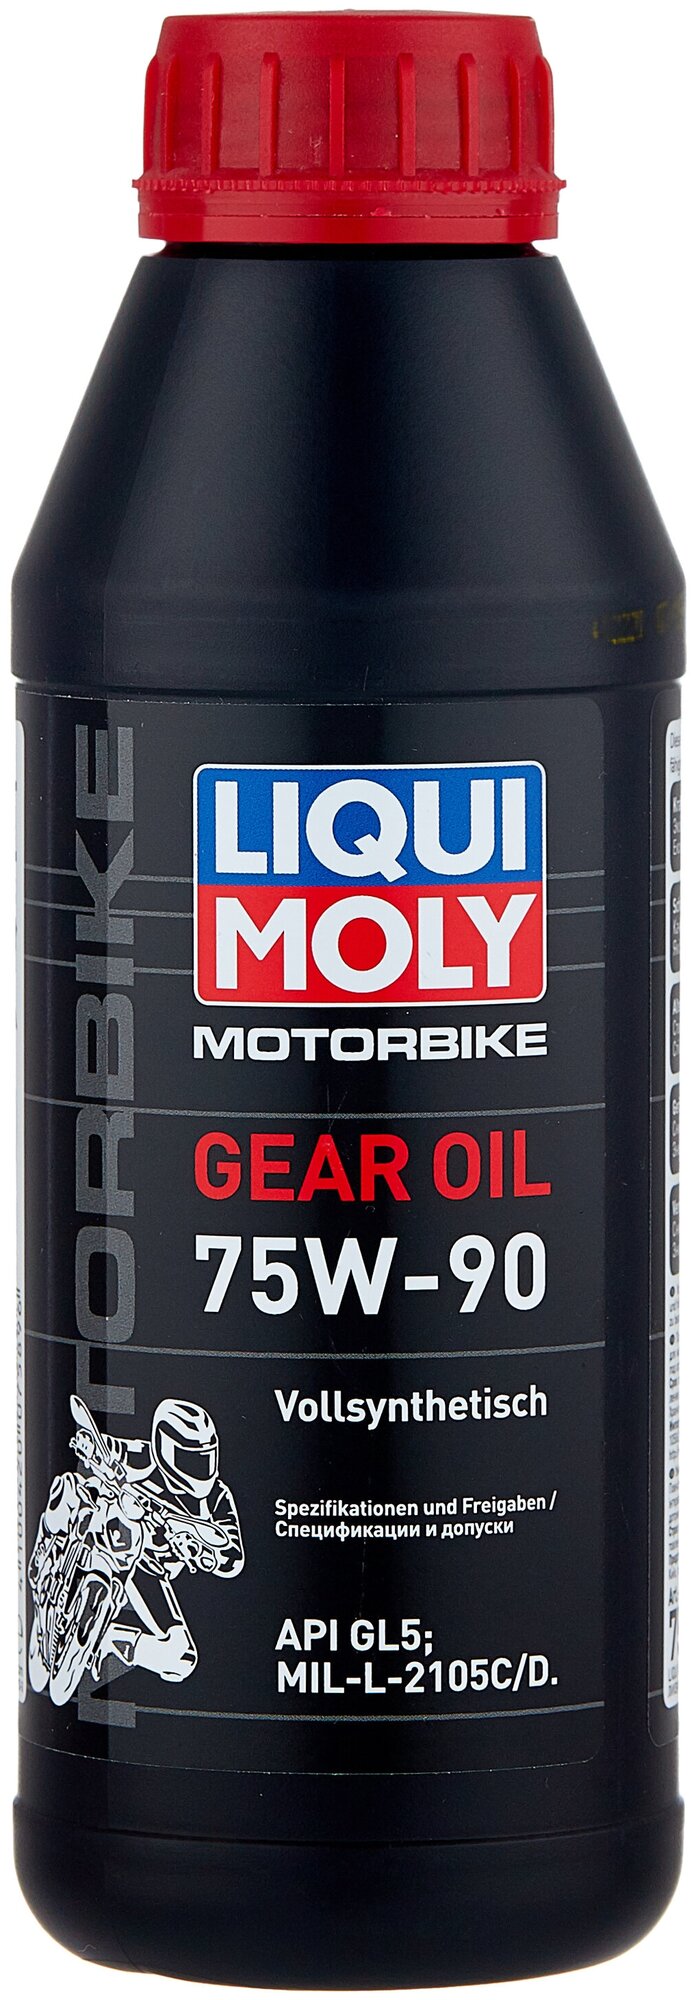 Масло трансмиссионное LIQUI MOLY Motorbike Gear Oil 75W-90